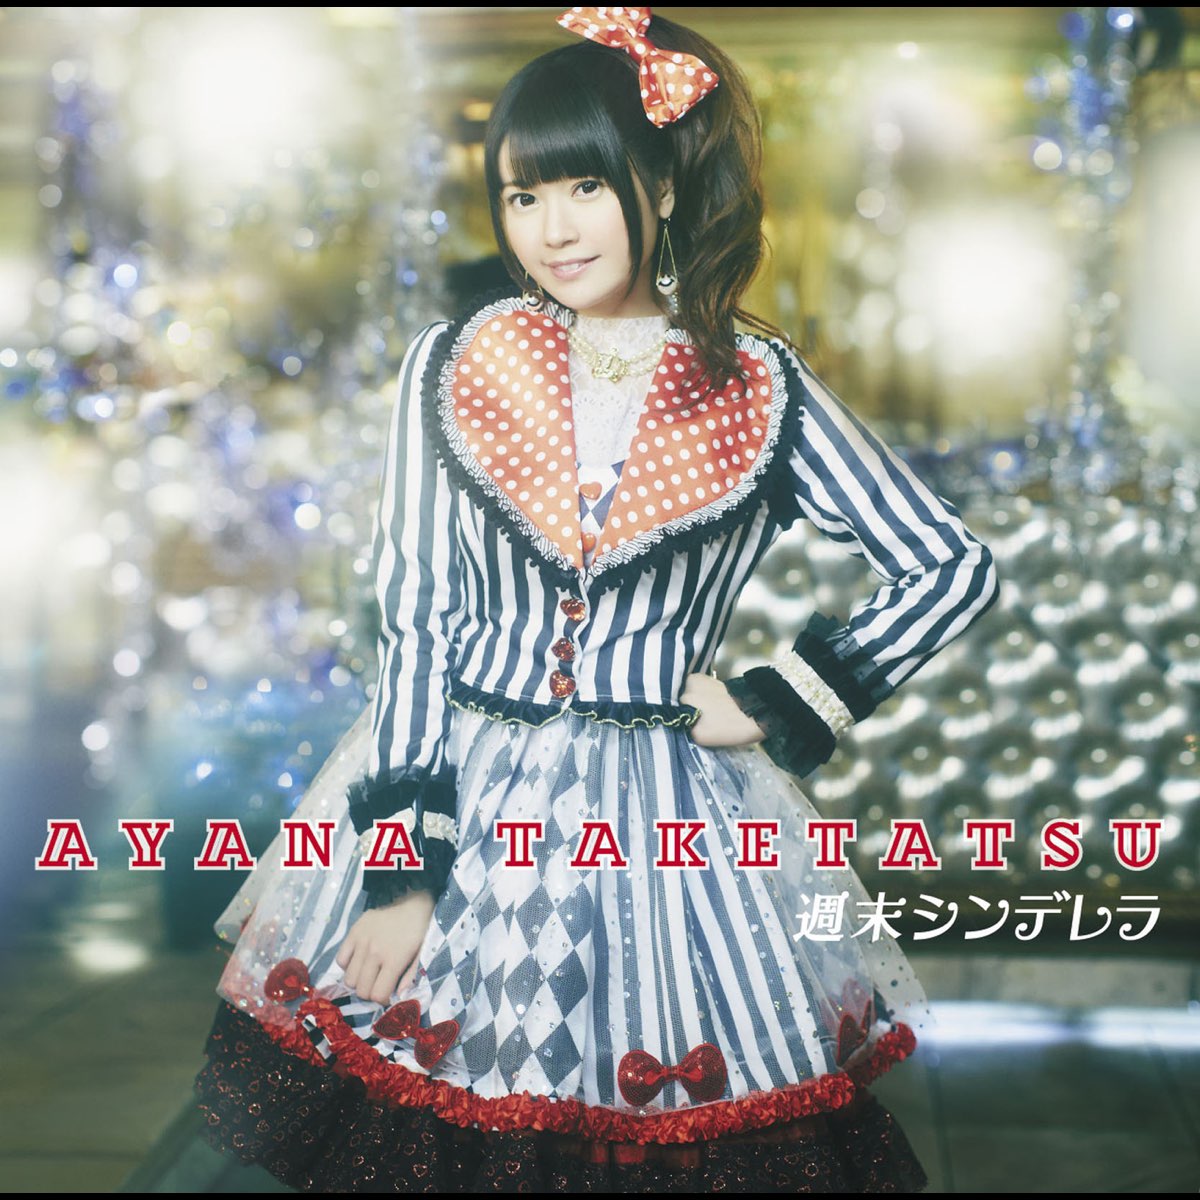 ‎Shumatsu Cinderella (Standard Edition) - EP by Ayana Taketatsu on ...